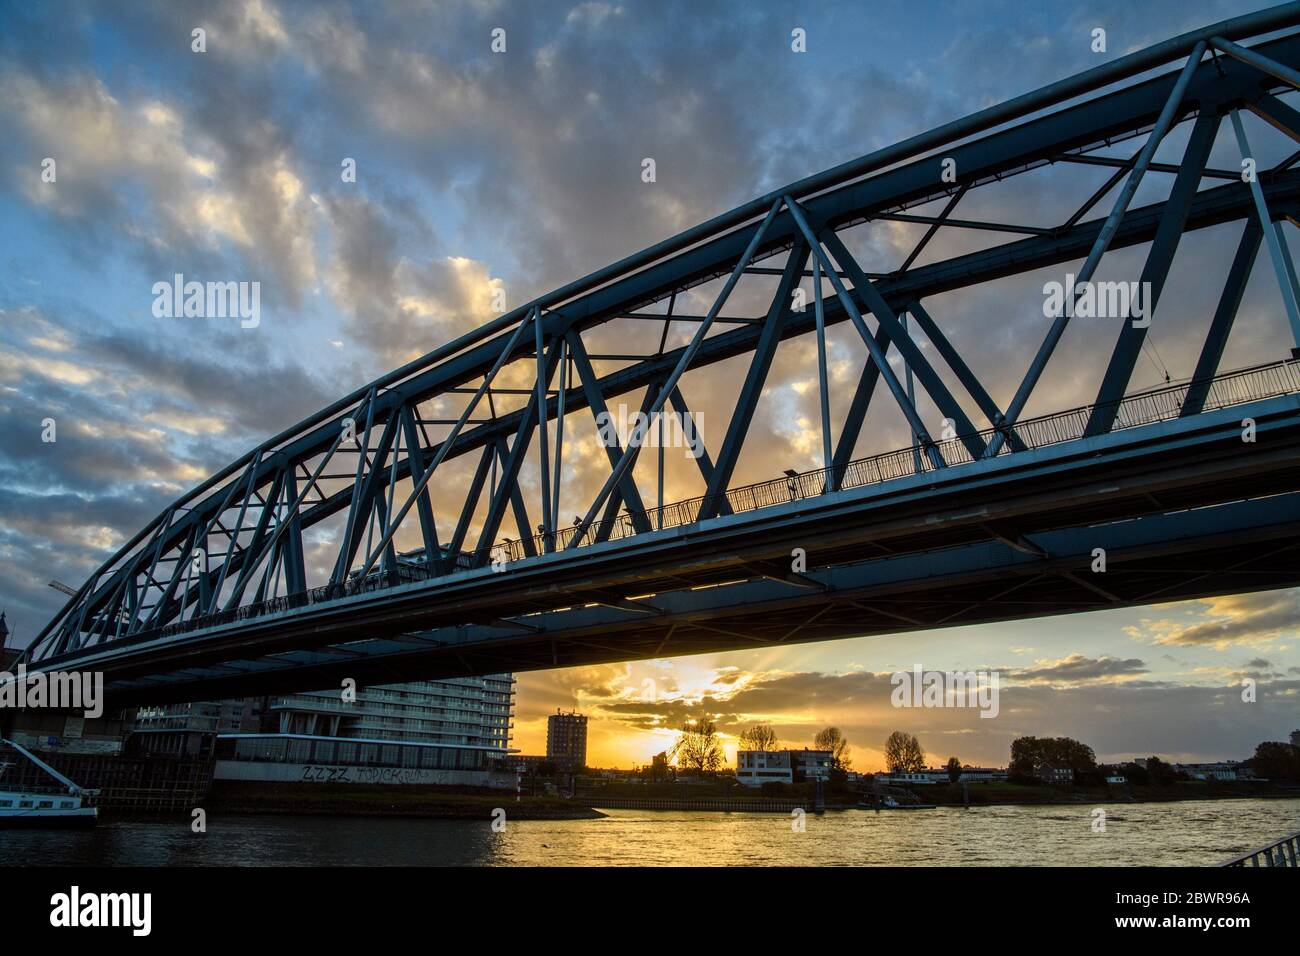 Nijmegen railway bridge over the Waal River, Nijmegen, Gelderland, Netherlands. Stock Photo